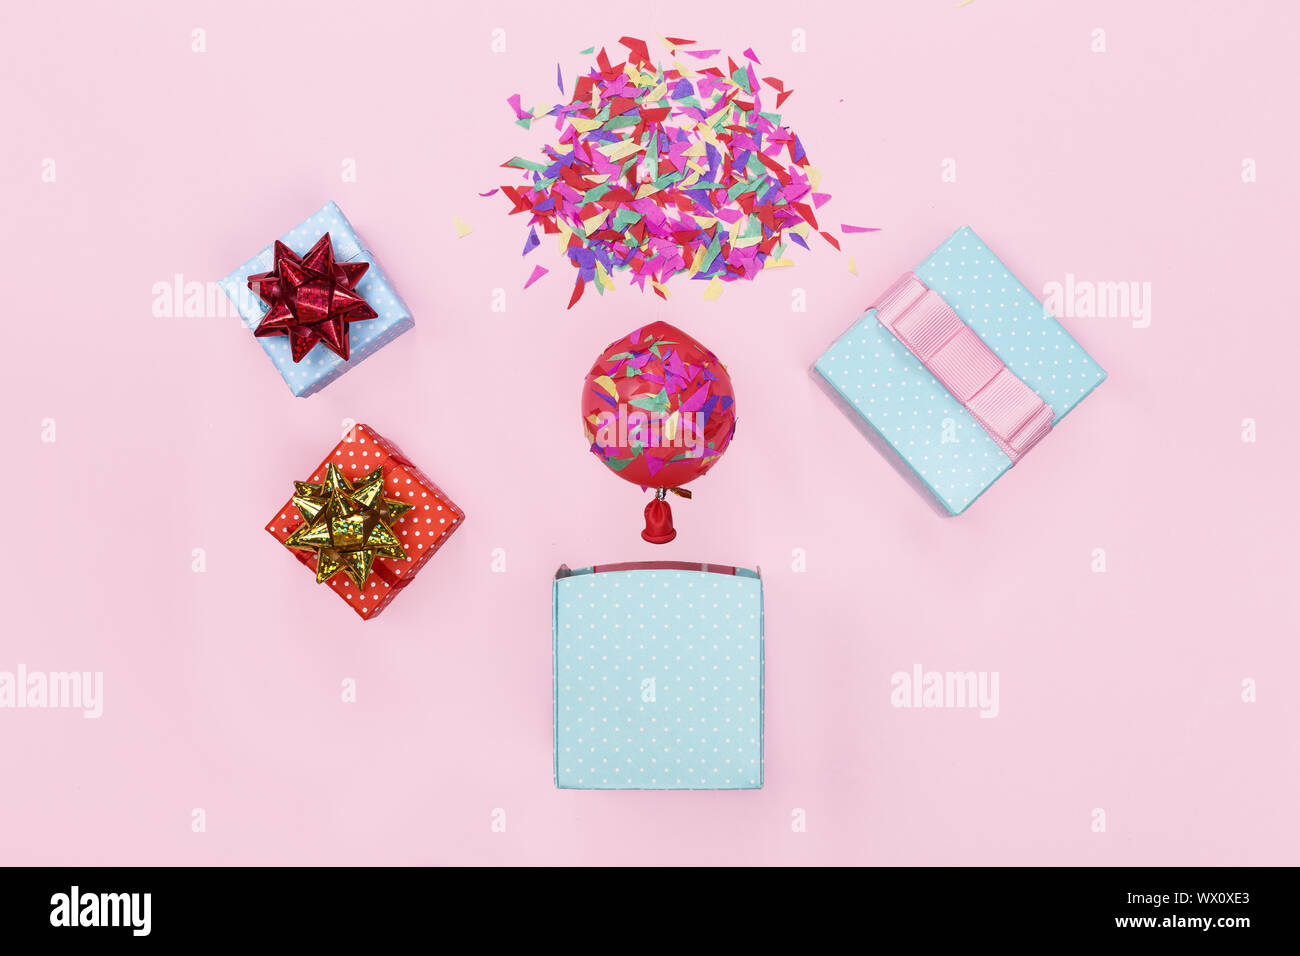 El minimalismo. Una maqueta de una tarjeta de felicitación. Caja de regalo, globos, confeti, parte backgro feliz cumpleaños. Foto de stock